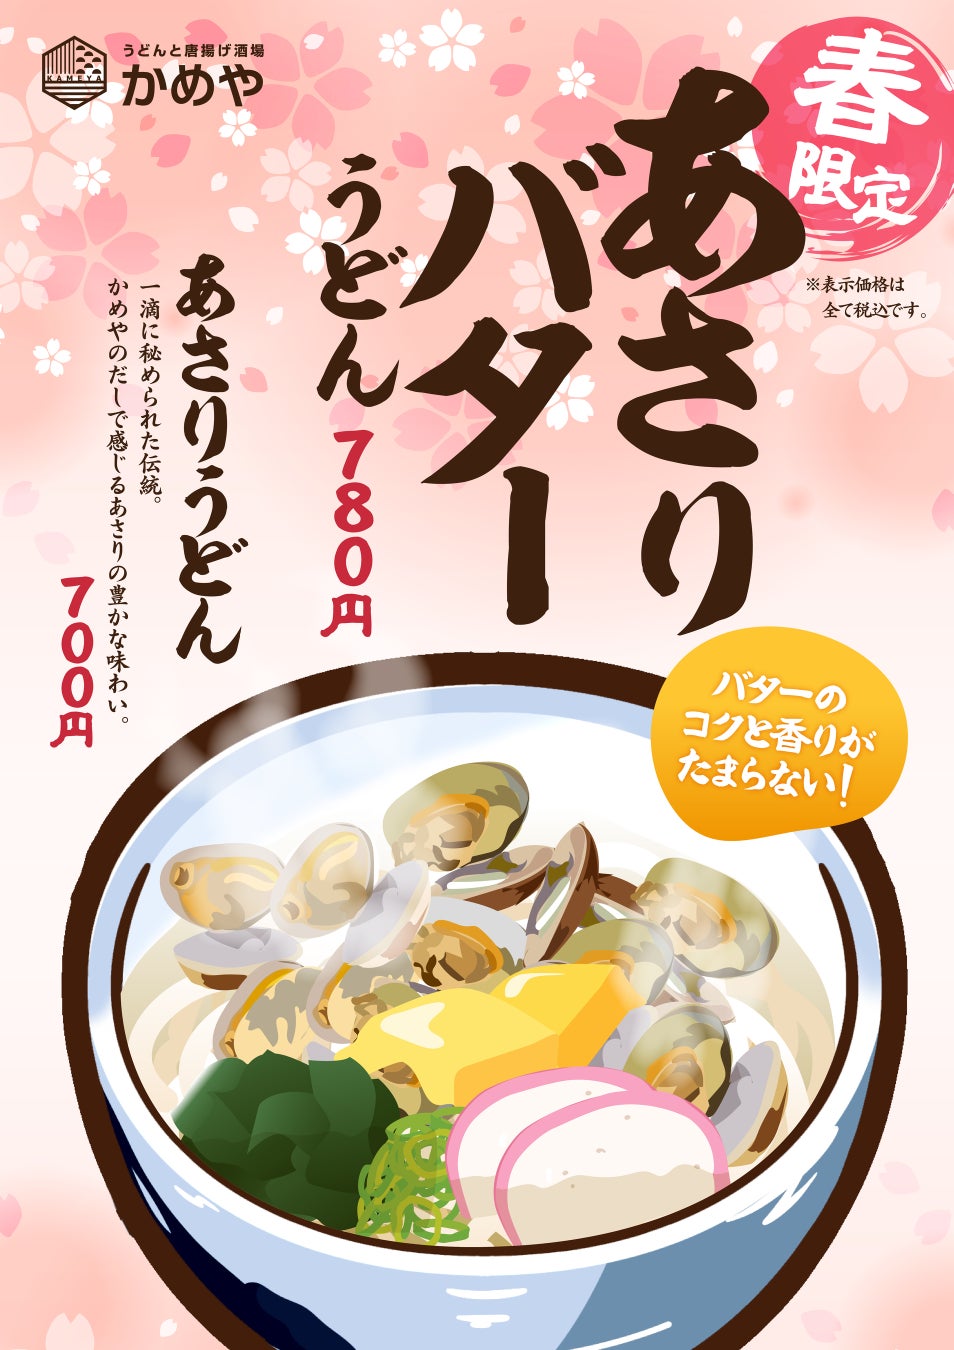 老舗グルメ寿司 銚子丸が、日頃の感謝をこめて「銚子丸 縁アプリ 春のキャンペーン」を開催!